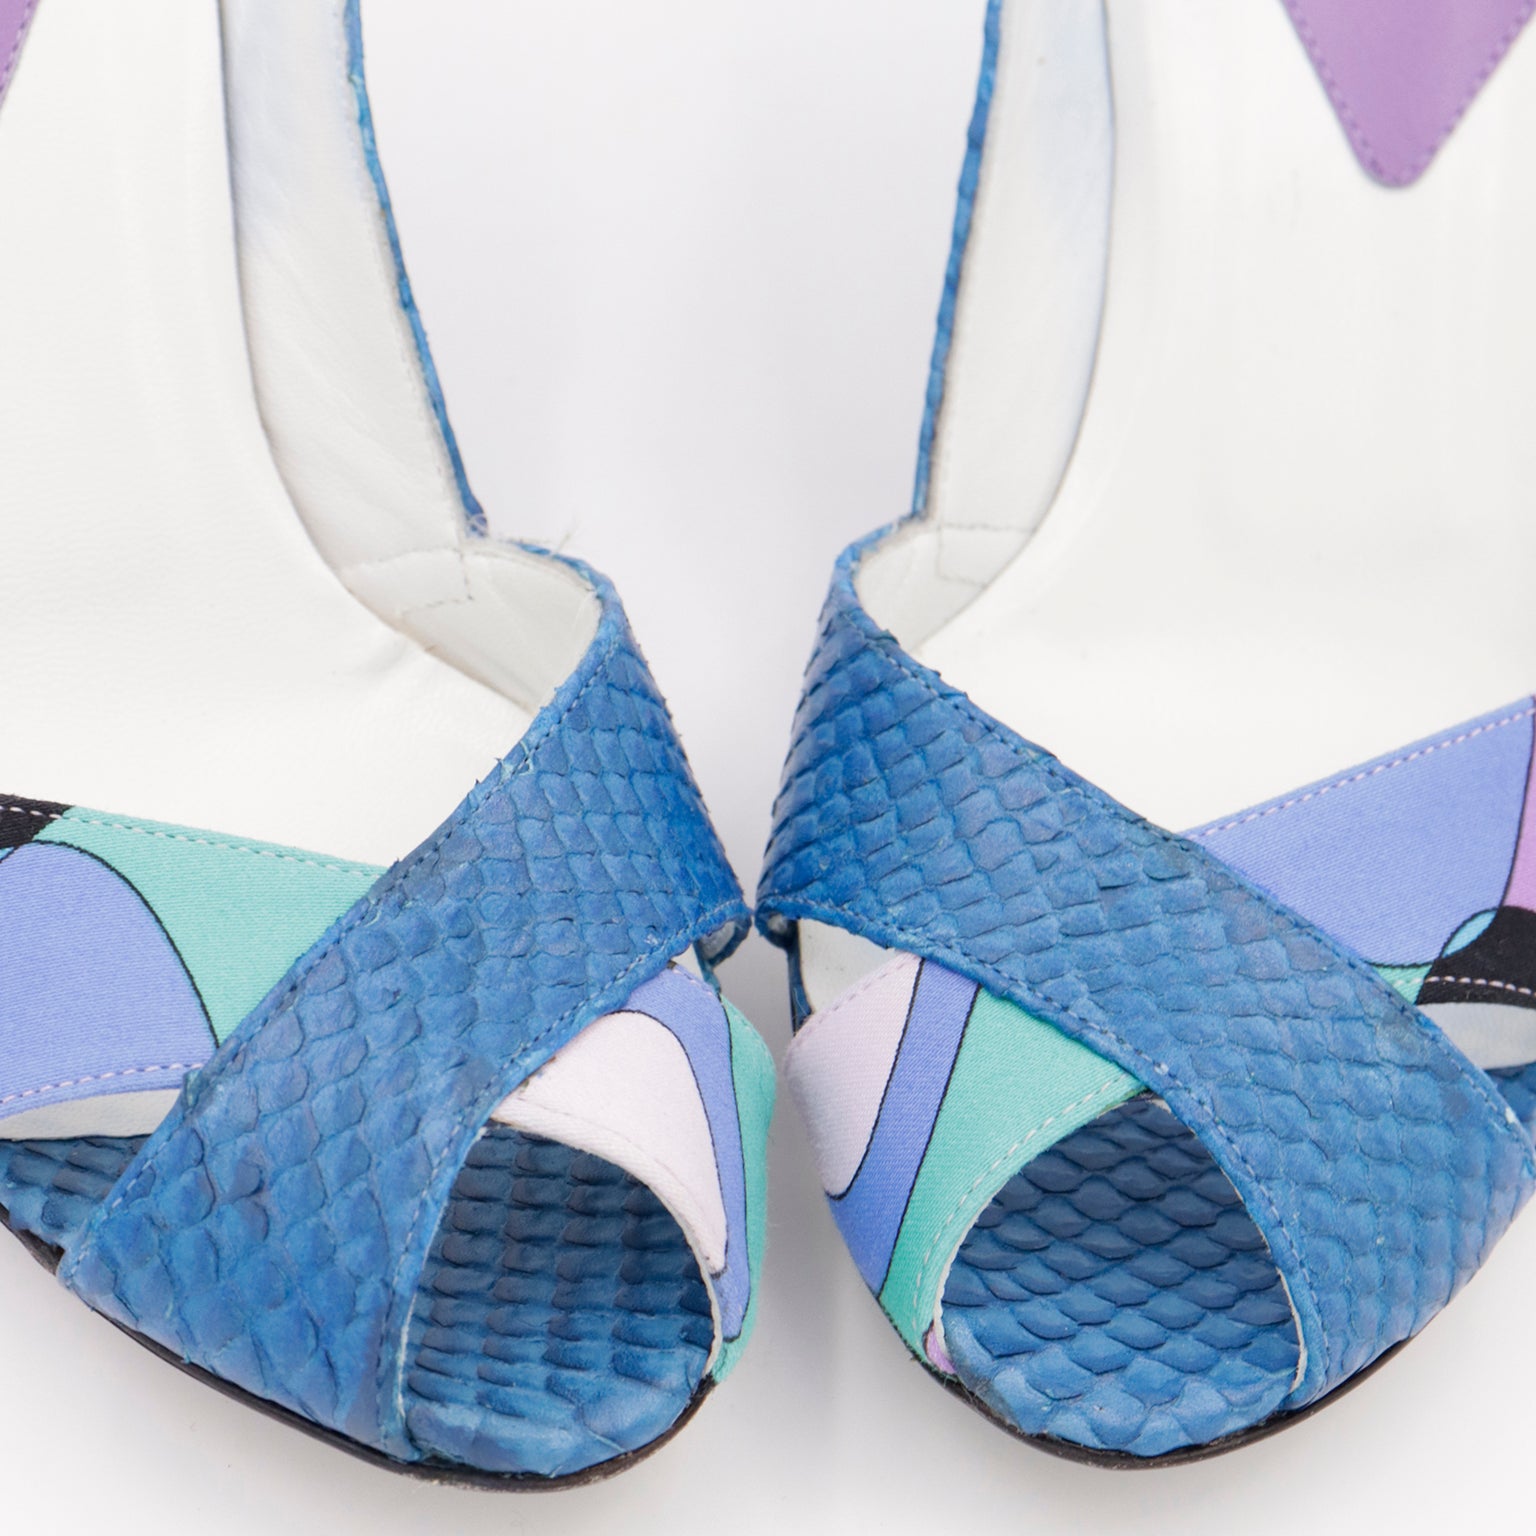 2000s Unworn Pucci Shoes Blue & Purple Snakeskin Open Toe Heels in Box